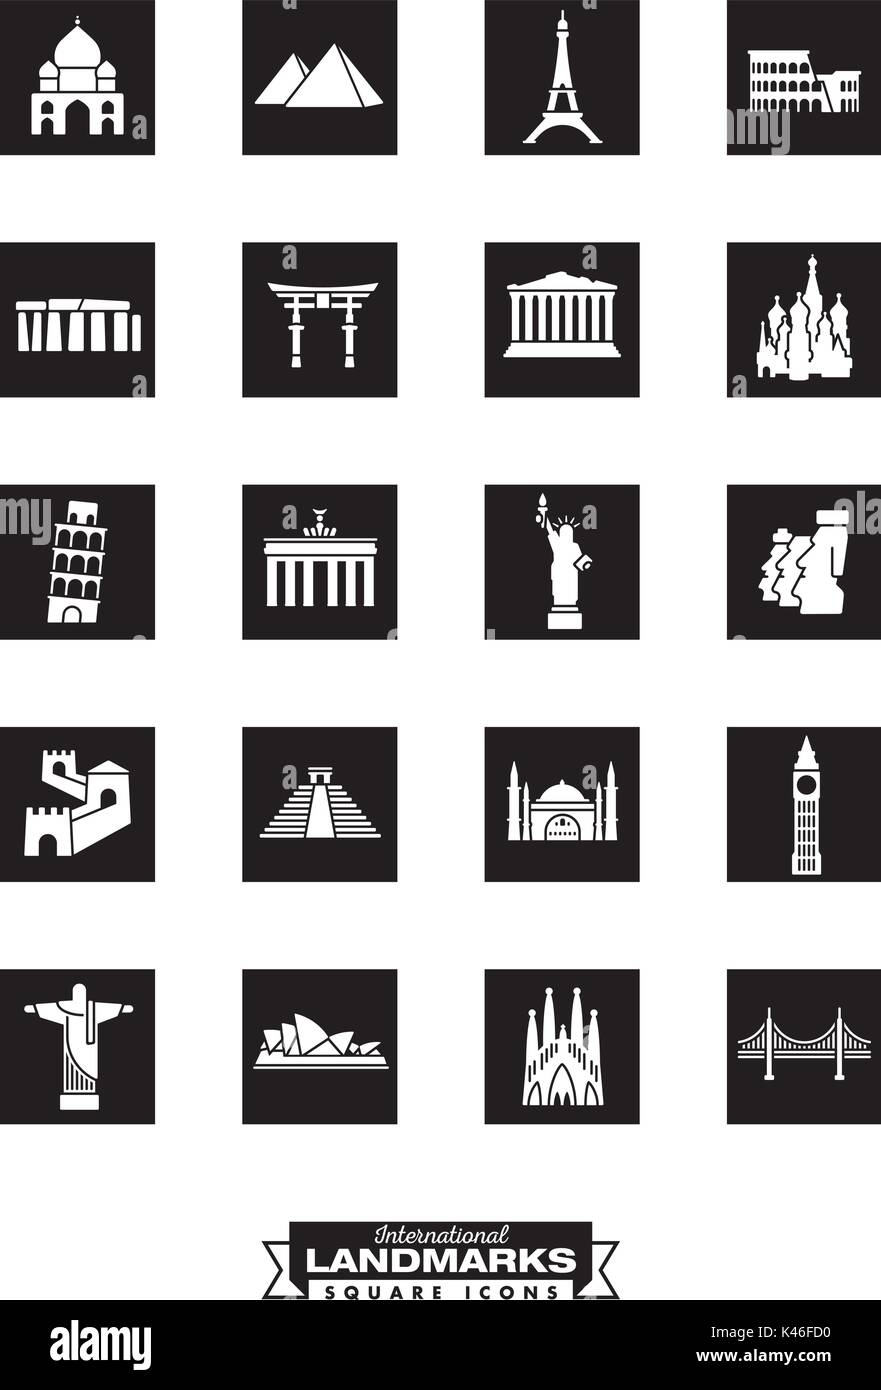 Square des icônes noires collection de sites internationaux Illustration de Vecteur